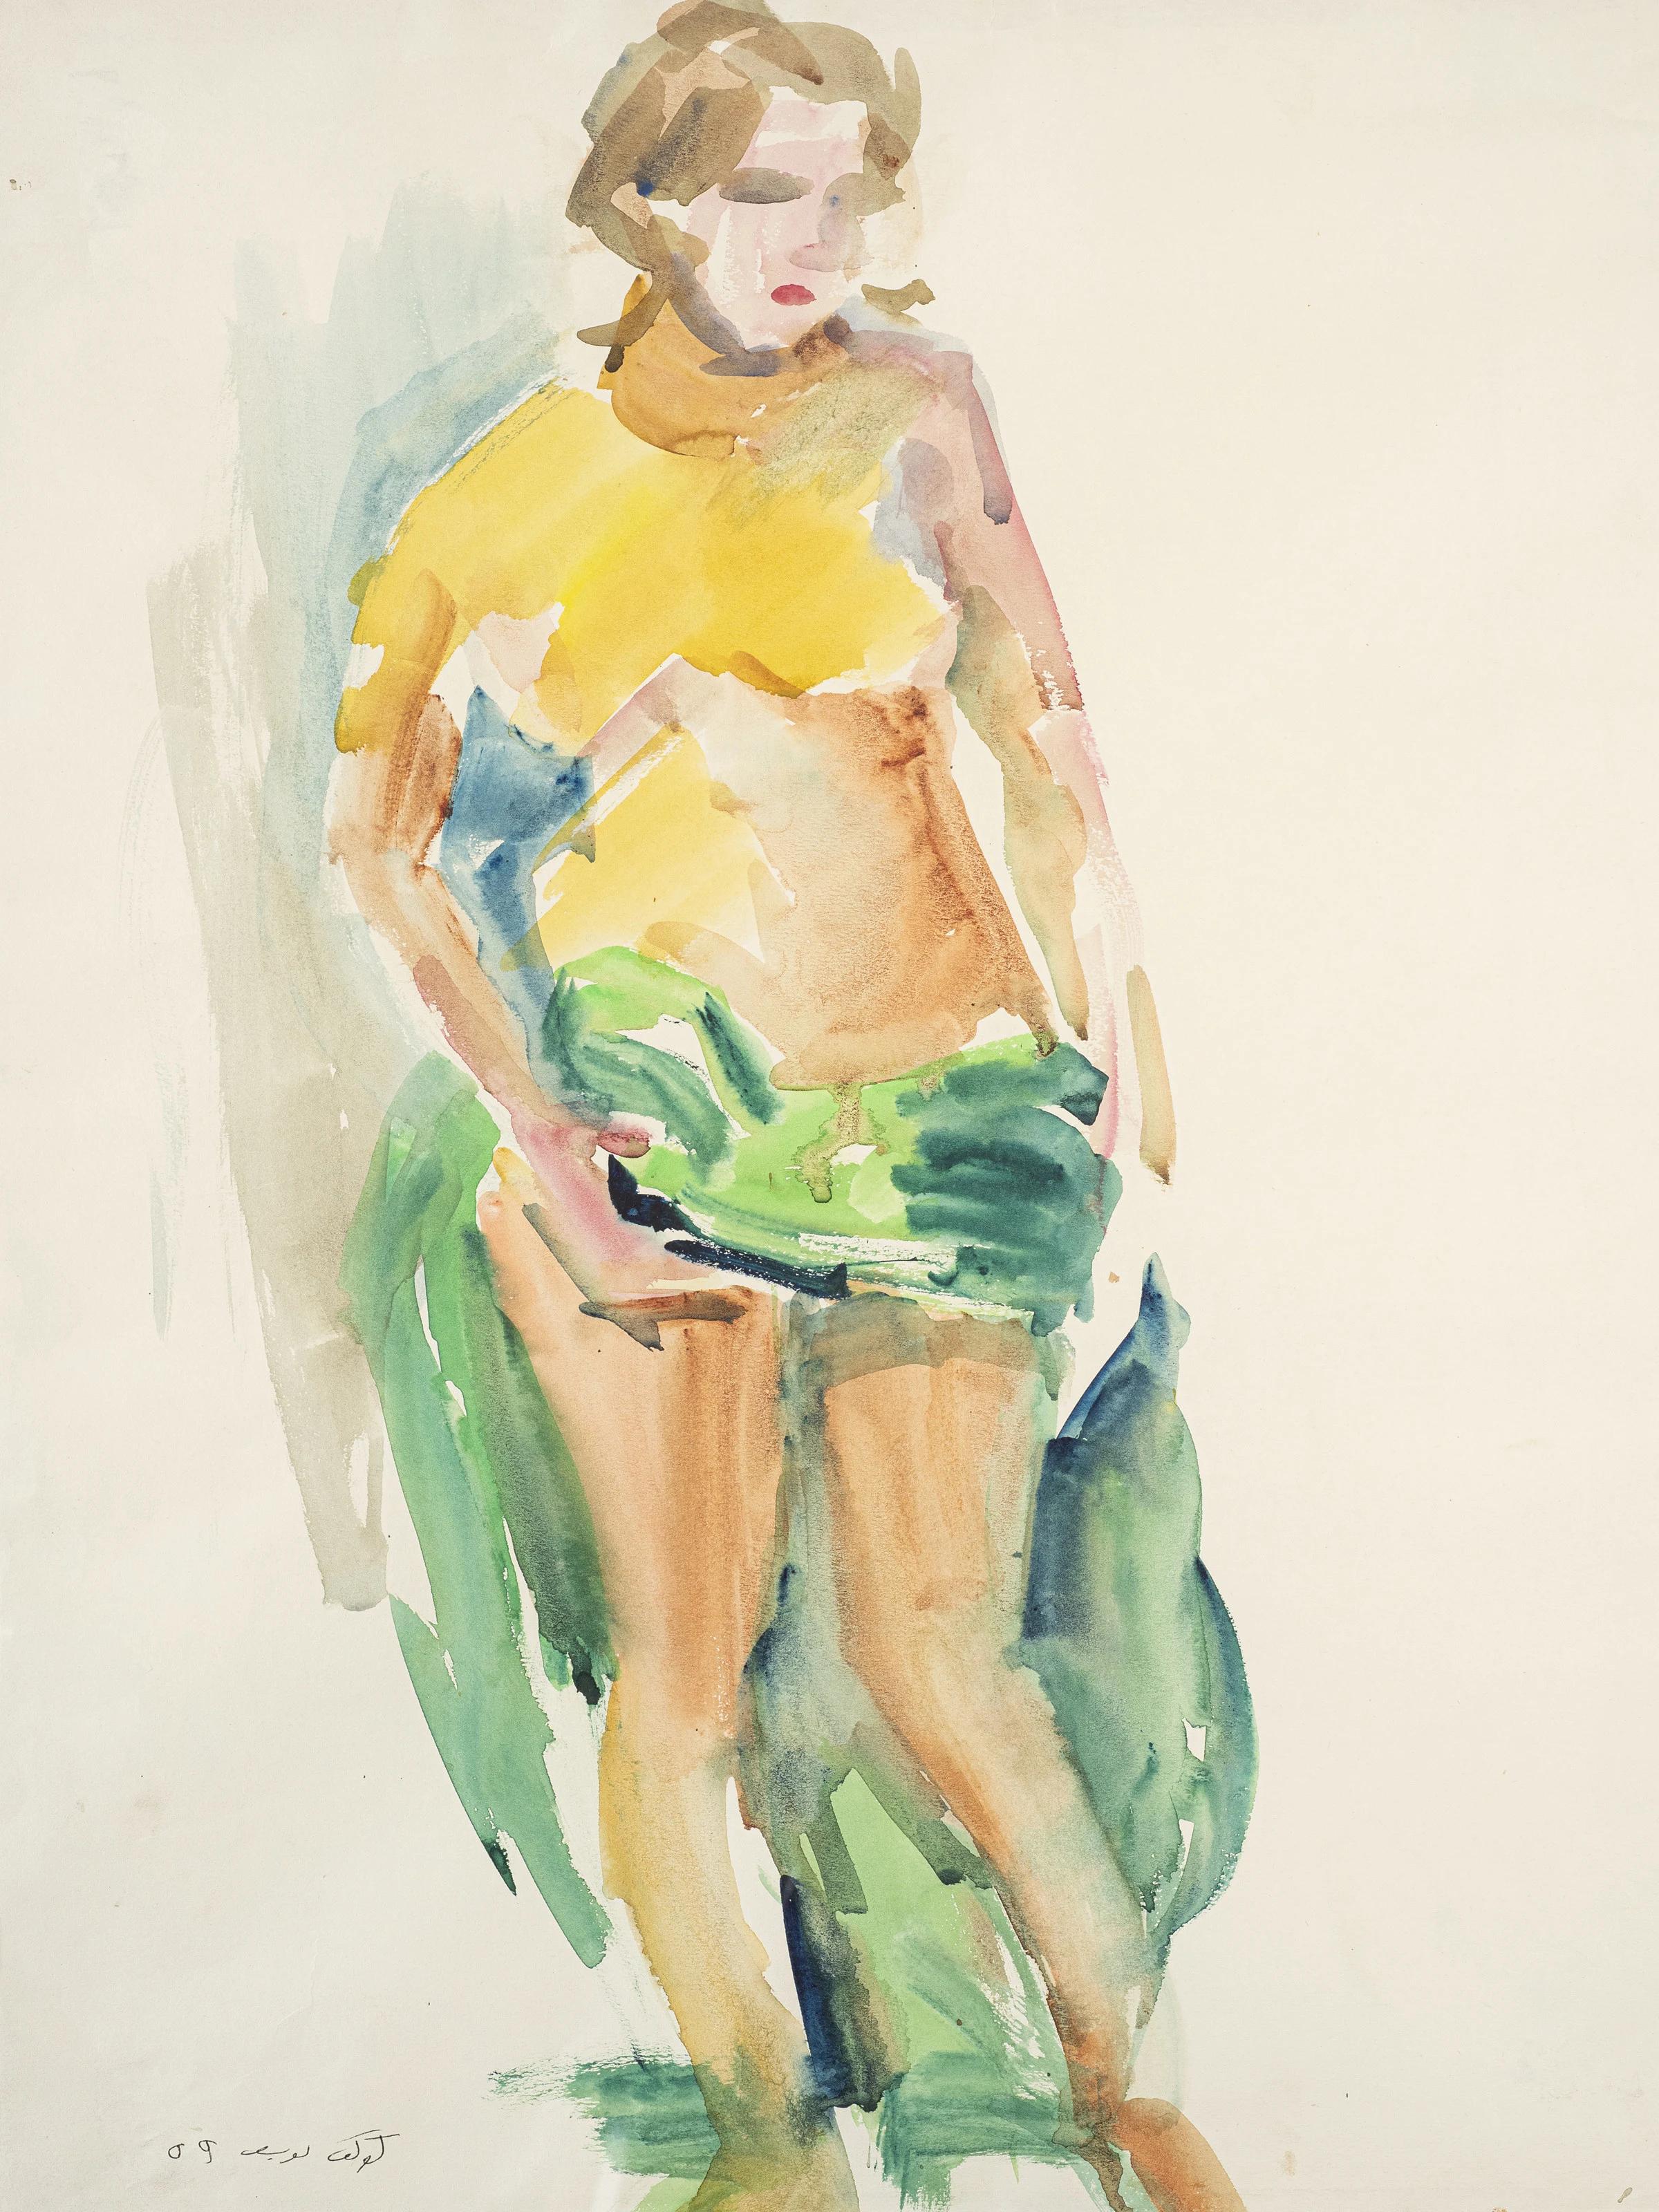 "Femme allongée" peinture à l'aquarelle 24" x 16" pouces (1959) de Kawkab Youssef 